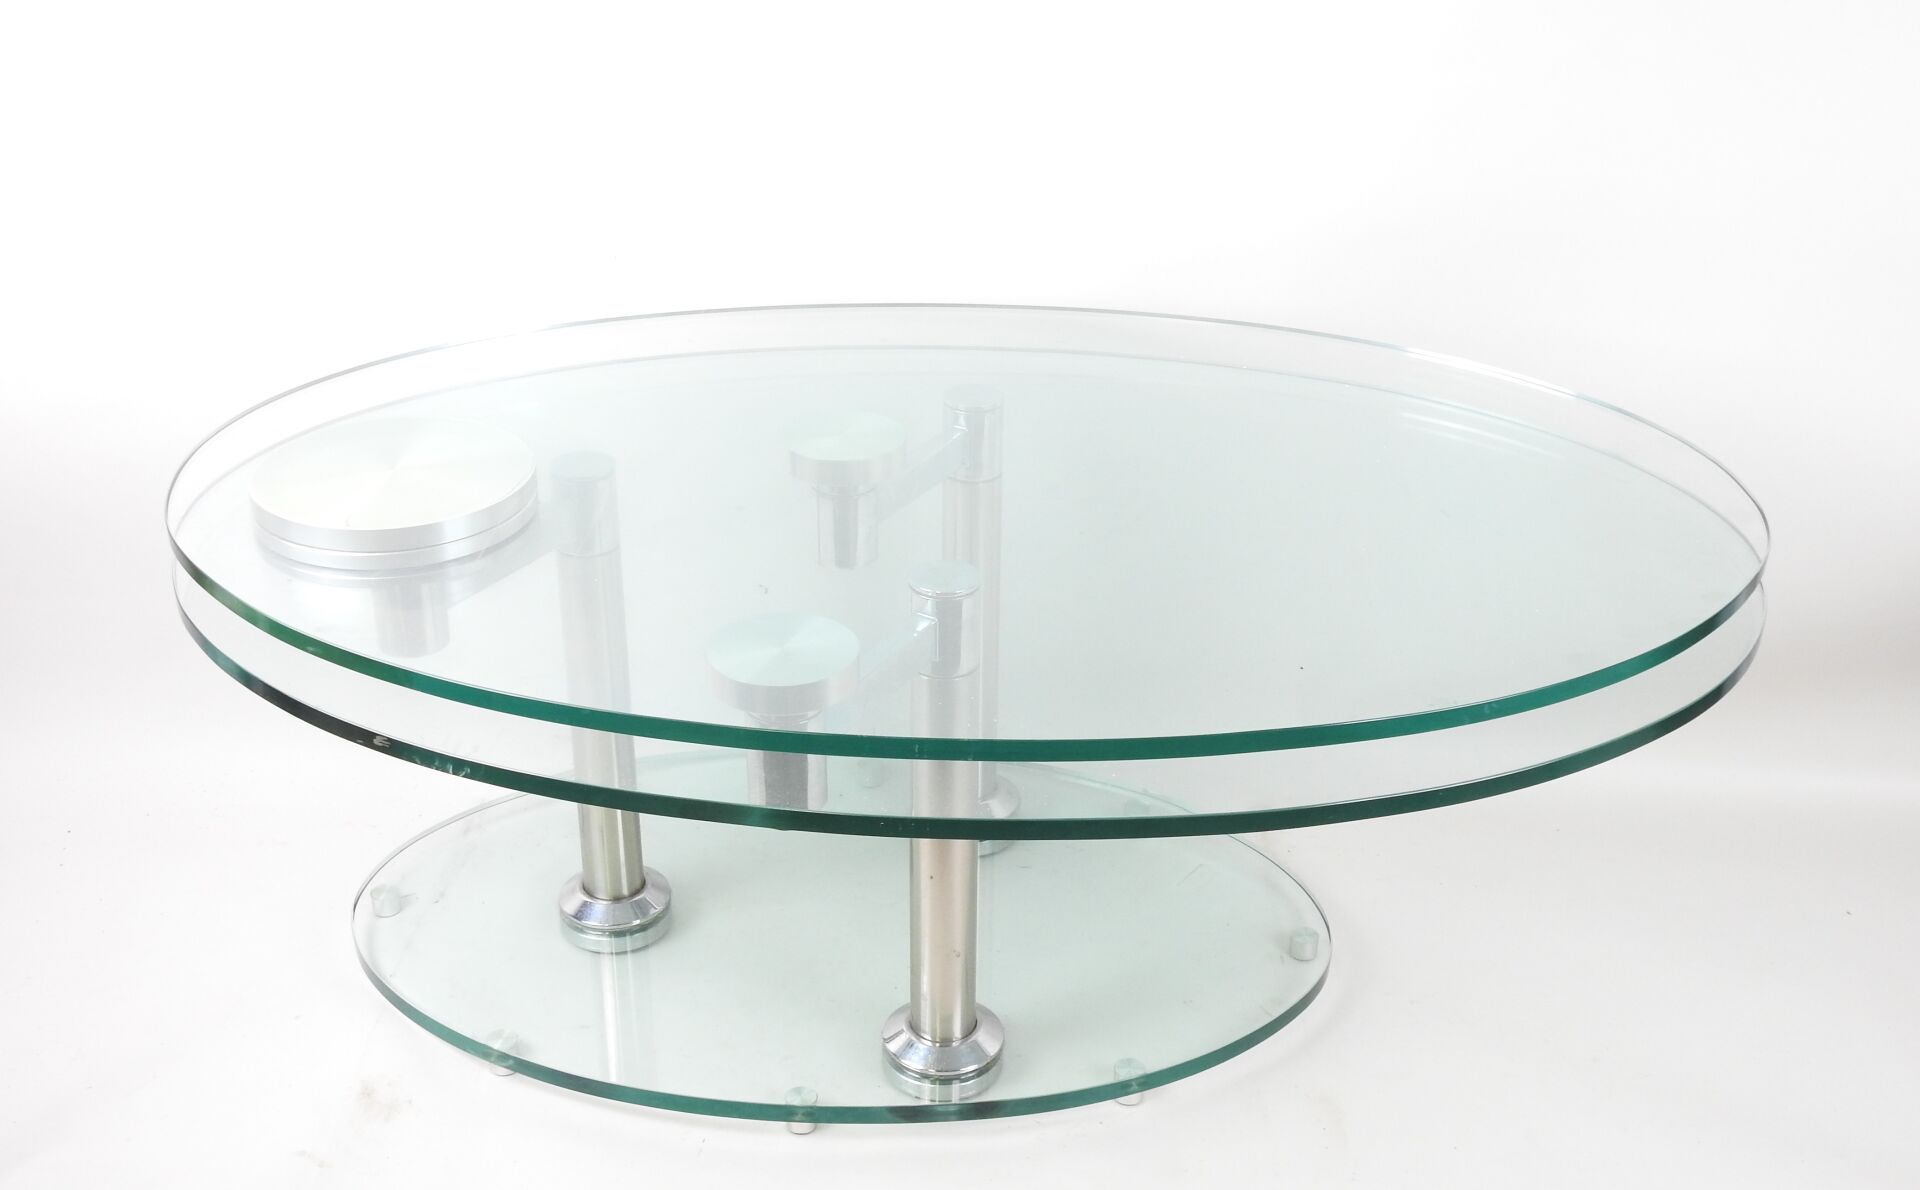 Null 椭圆形玻璃和镀铬金属咖啡桌，配有两个可旋转的桌面和玻璃底座。
20 世纪。
42 x 88 x 58 厘米。